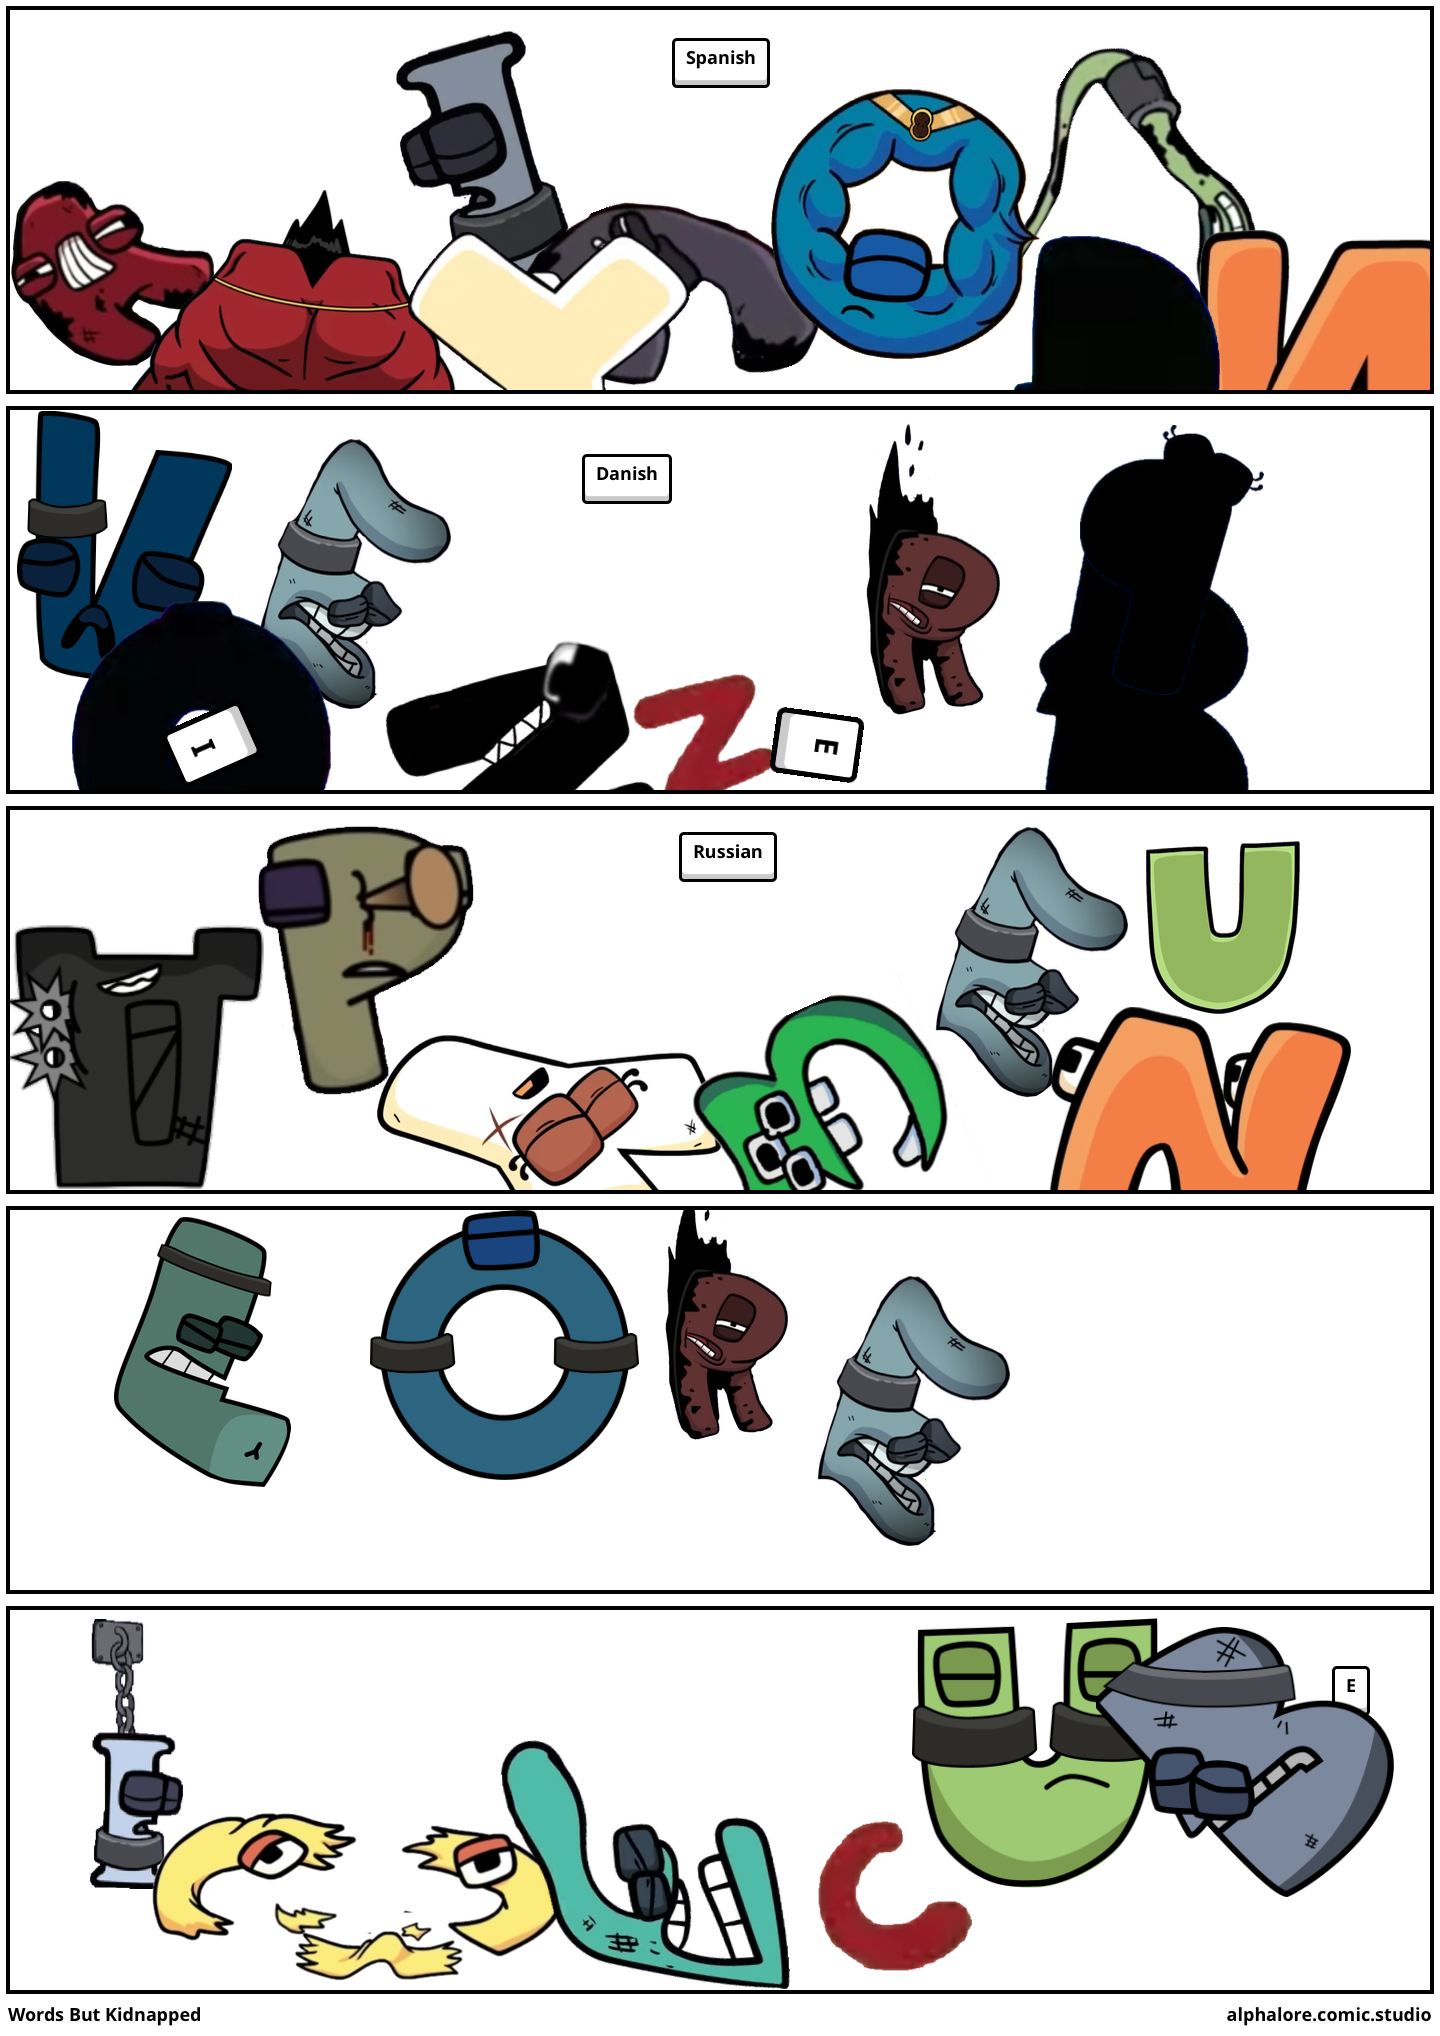 alphabet lore comic maker got an update! : r/alphabetfriends